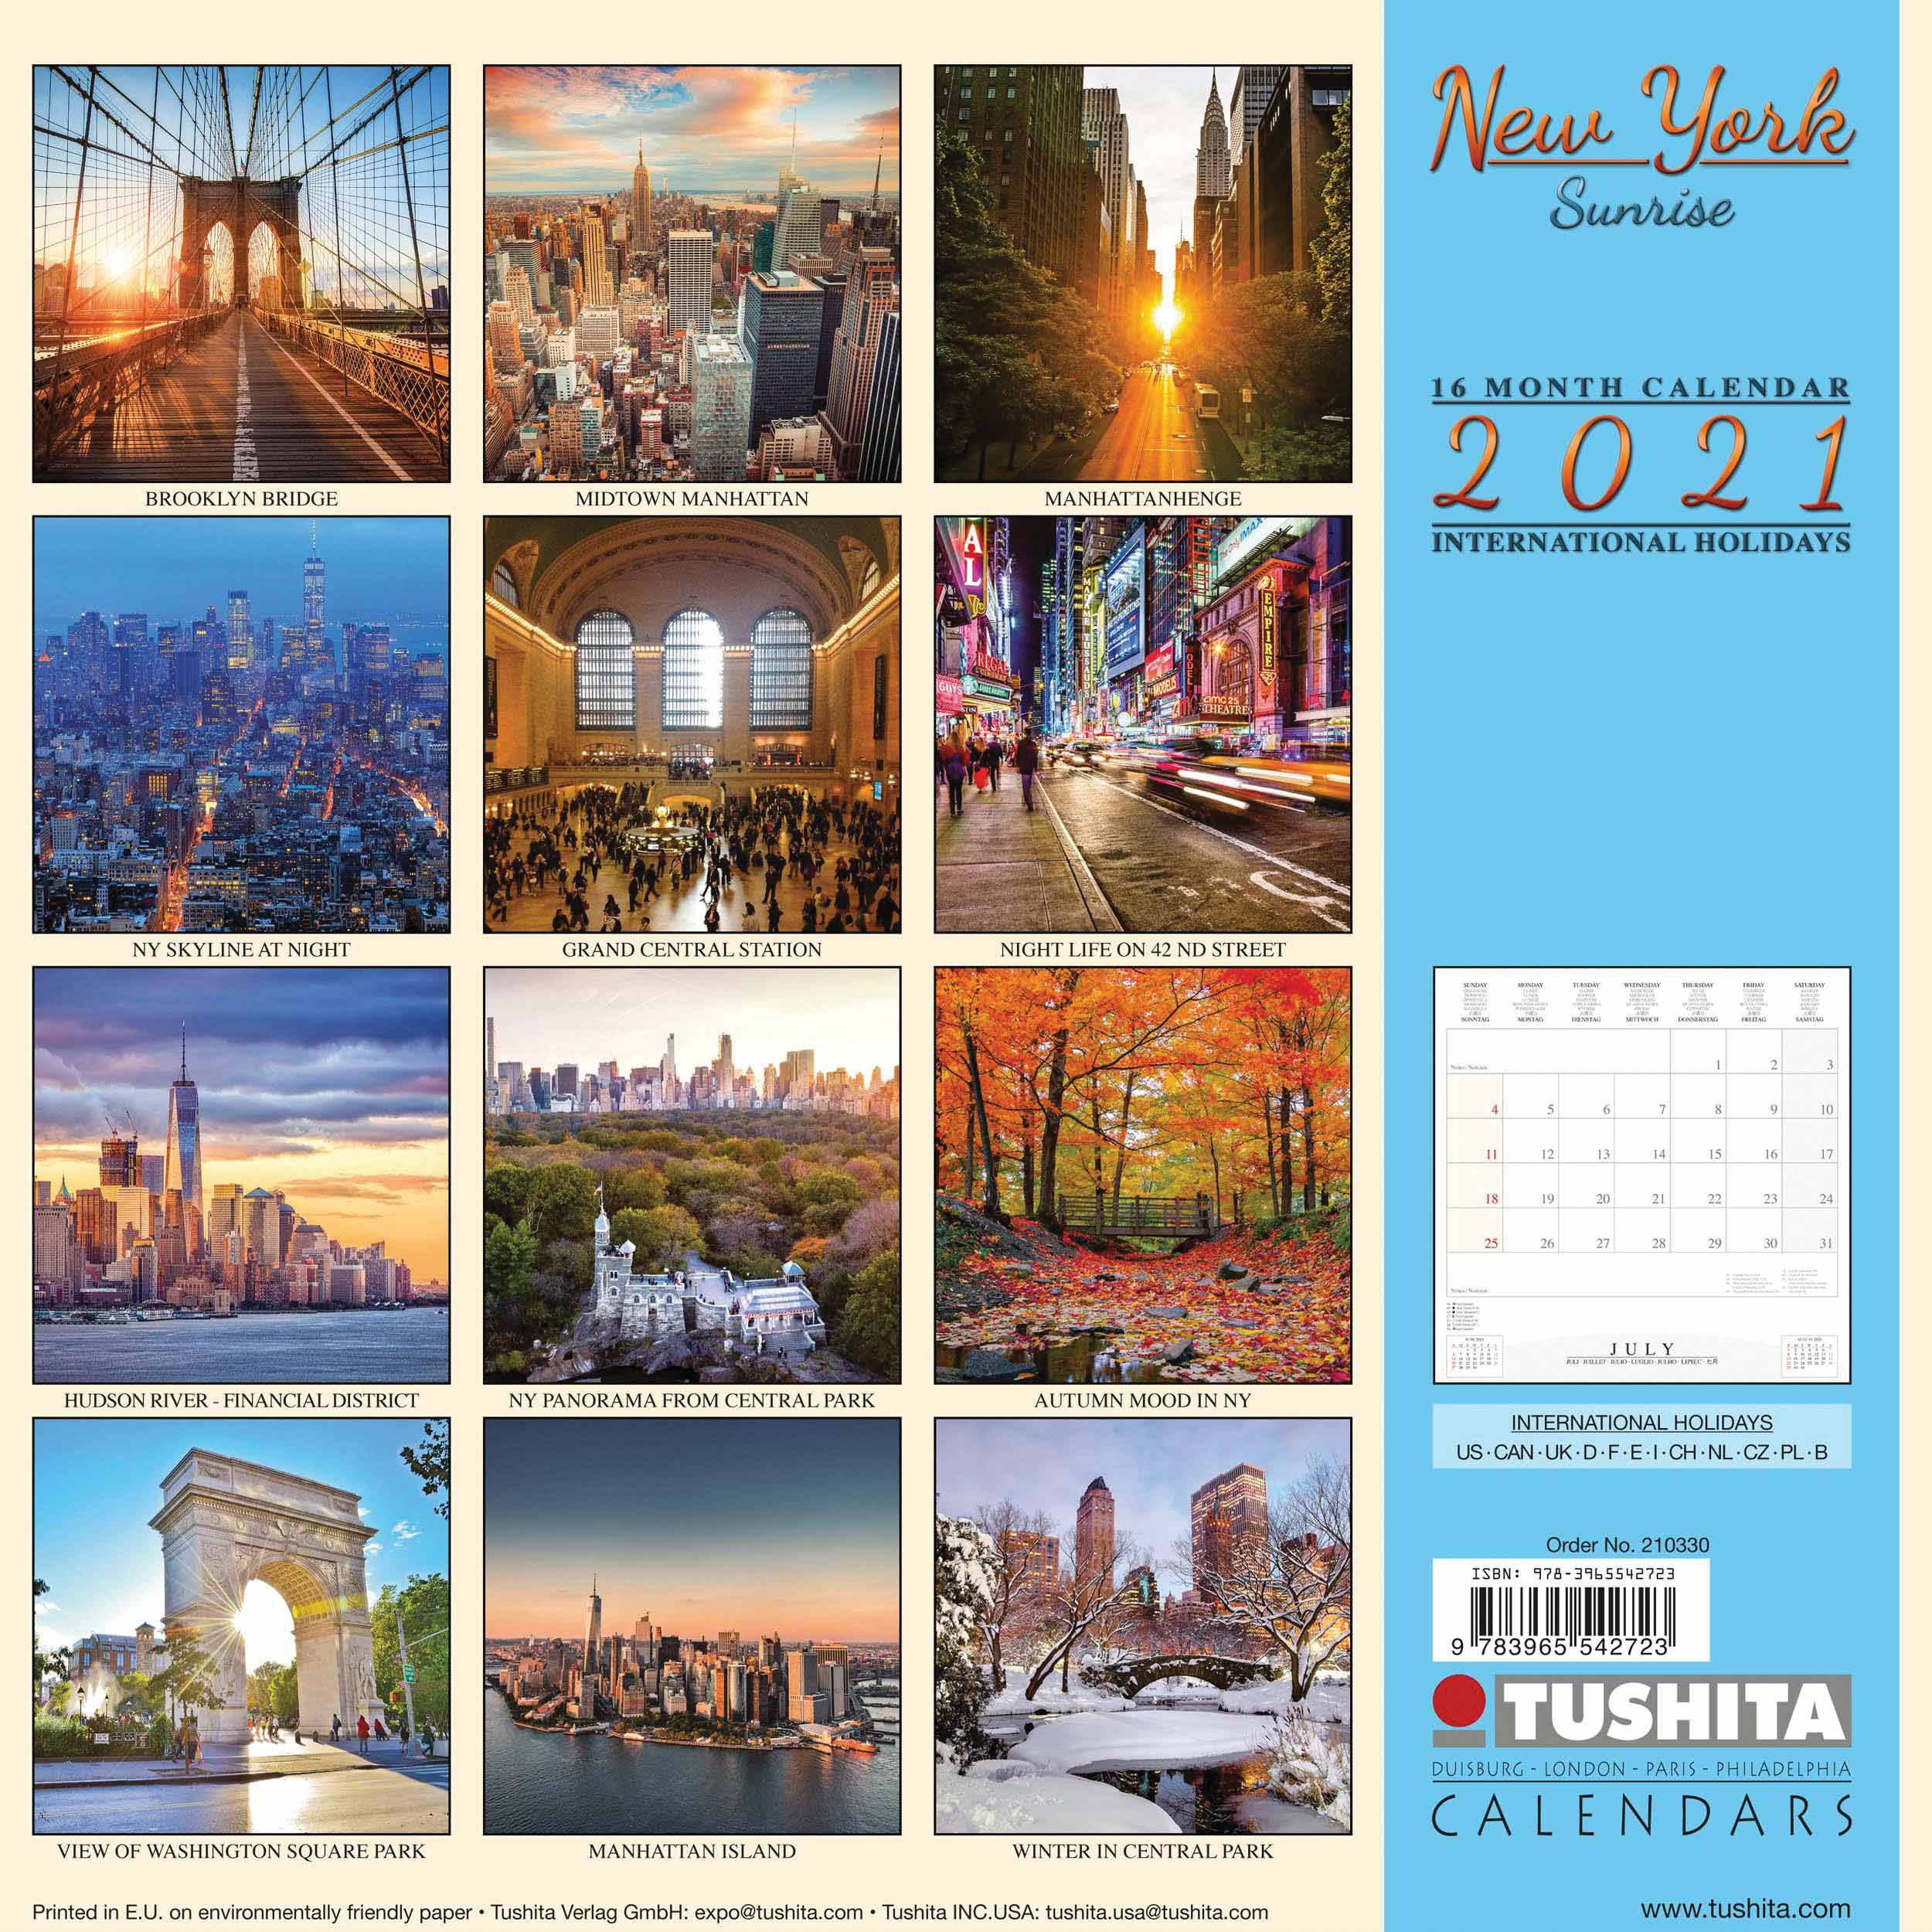 new york sunrise calendar 2021 at calendar club 1